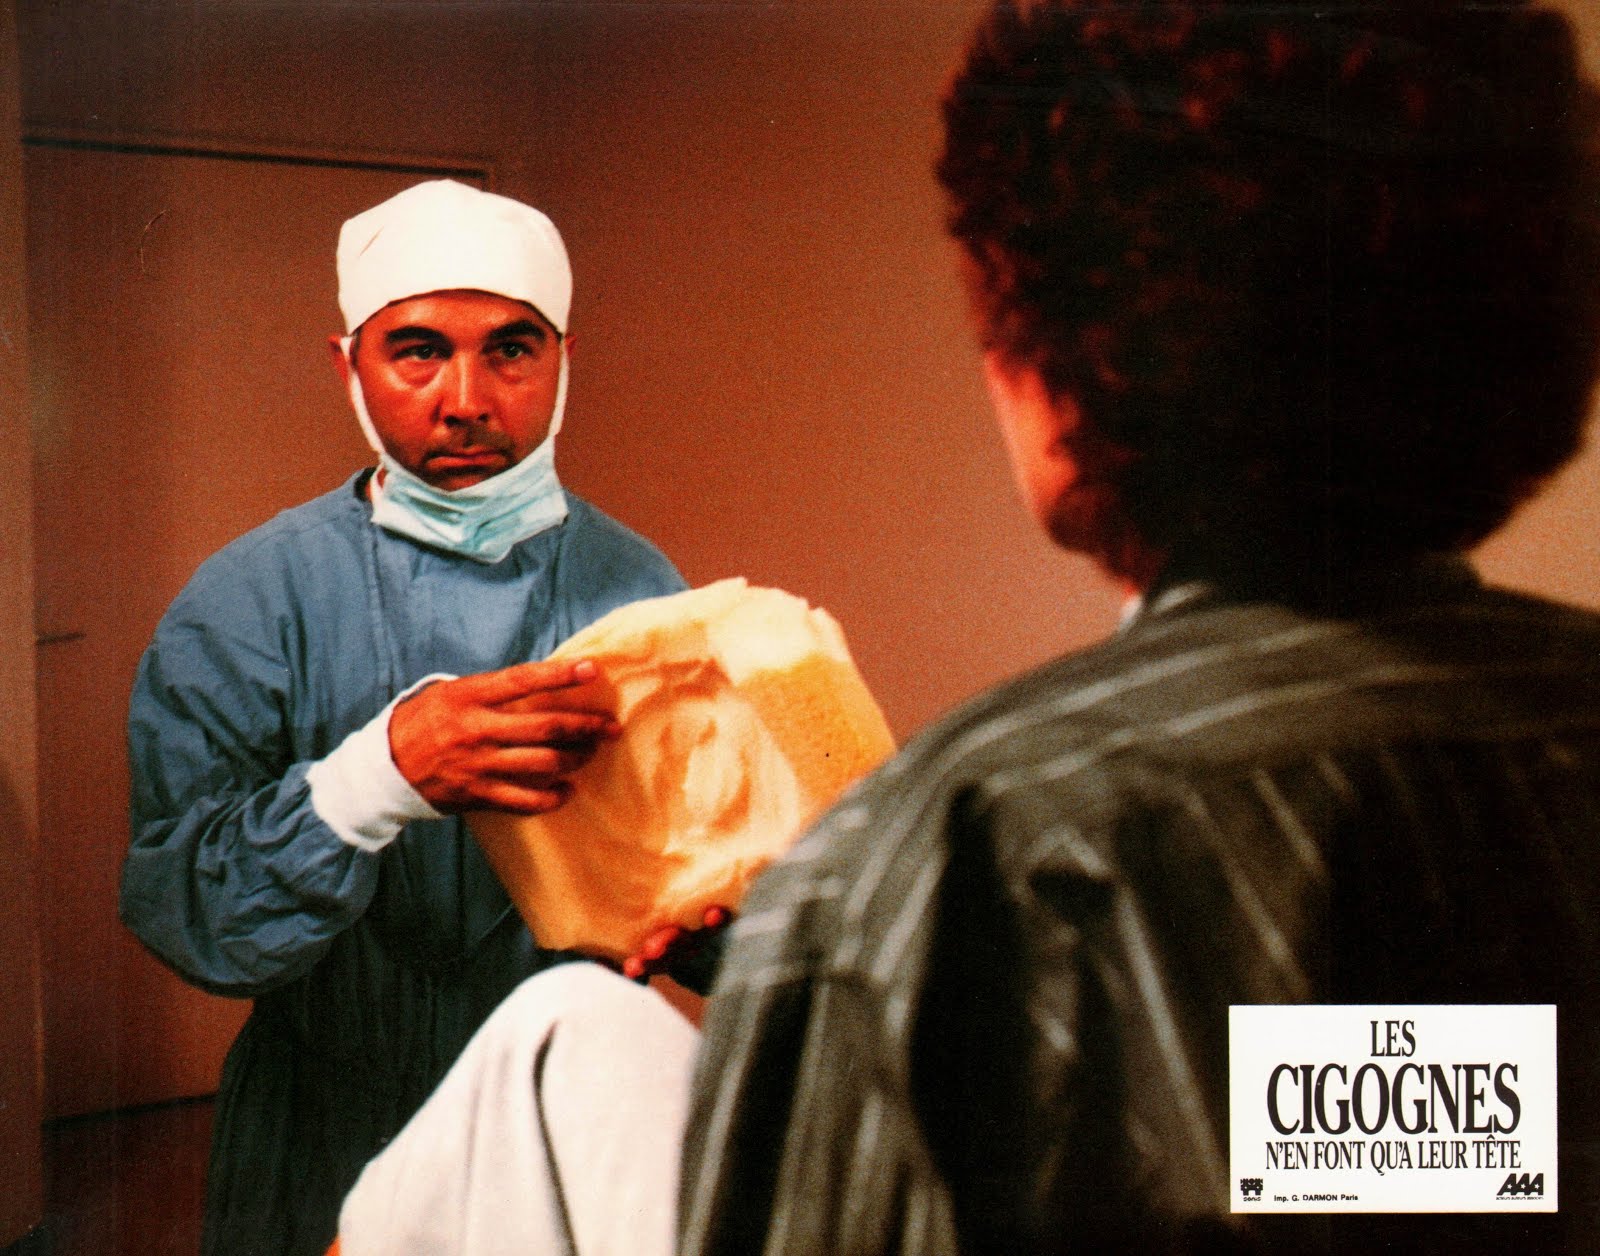 Les cigognes n'en font qu'à leur tête (1988) Didier Kaminka - Les cigognes n'en font qu'à leur tête